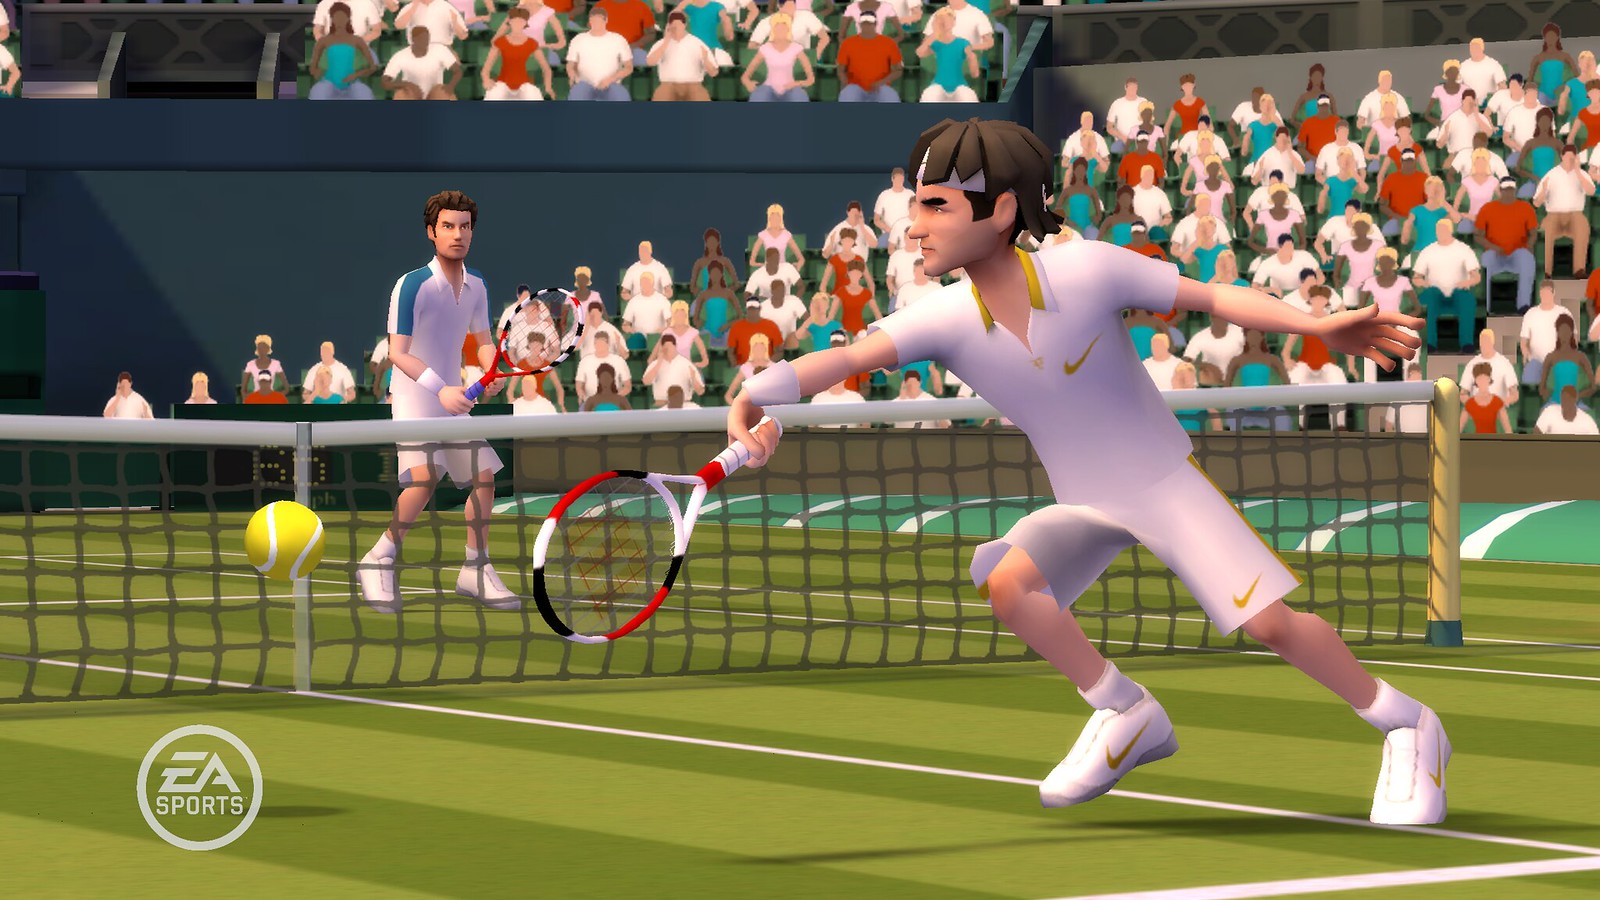 Игра про тренера. Игра в теннис. Гранд-слэм теннис. Wii Tennis. EA Sports Grand Slam Tennis.